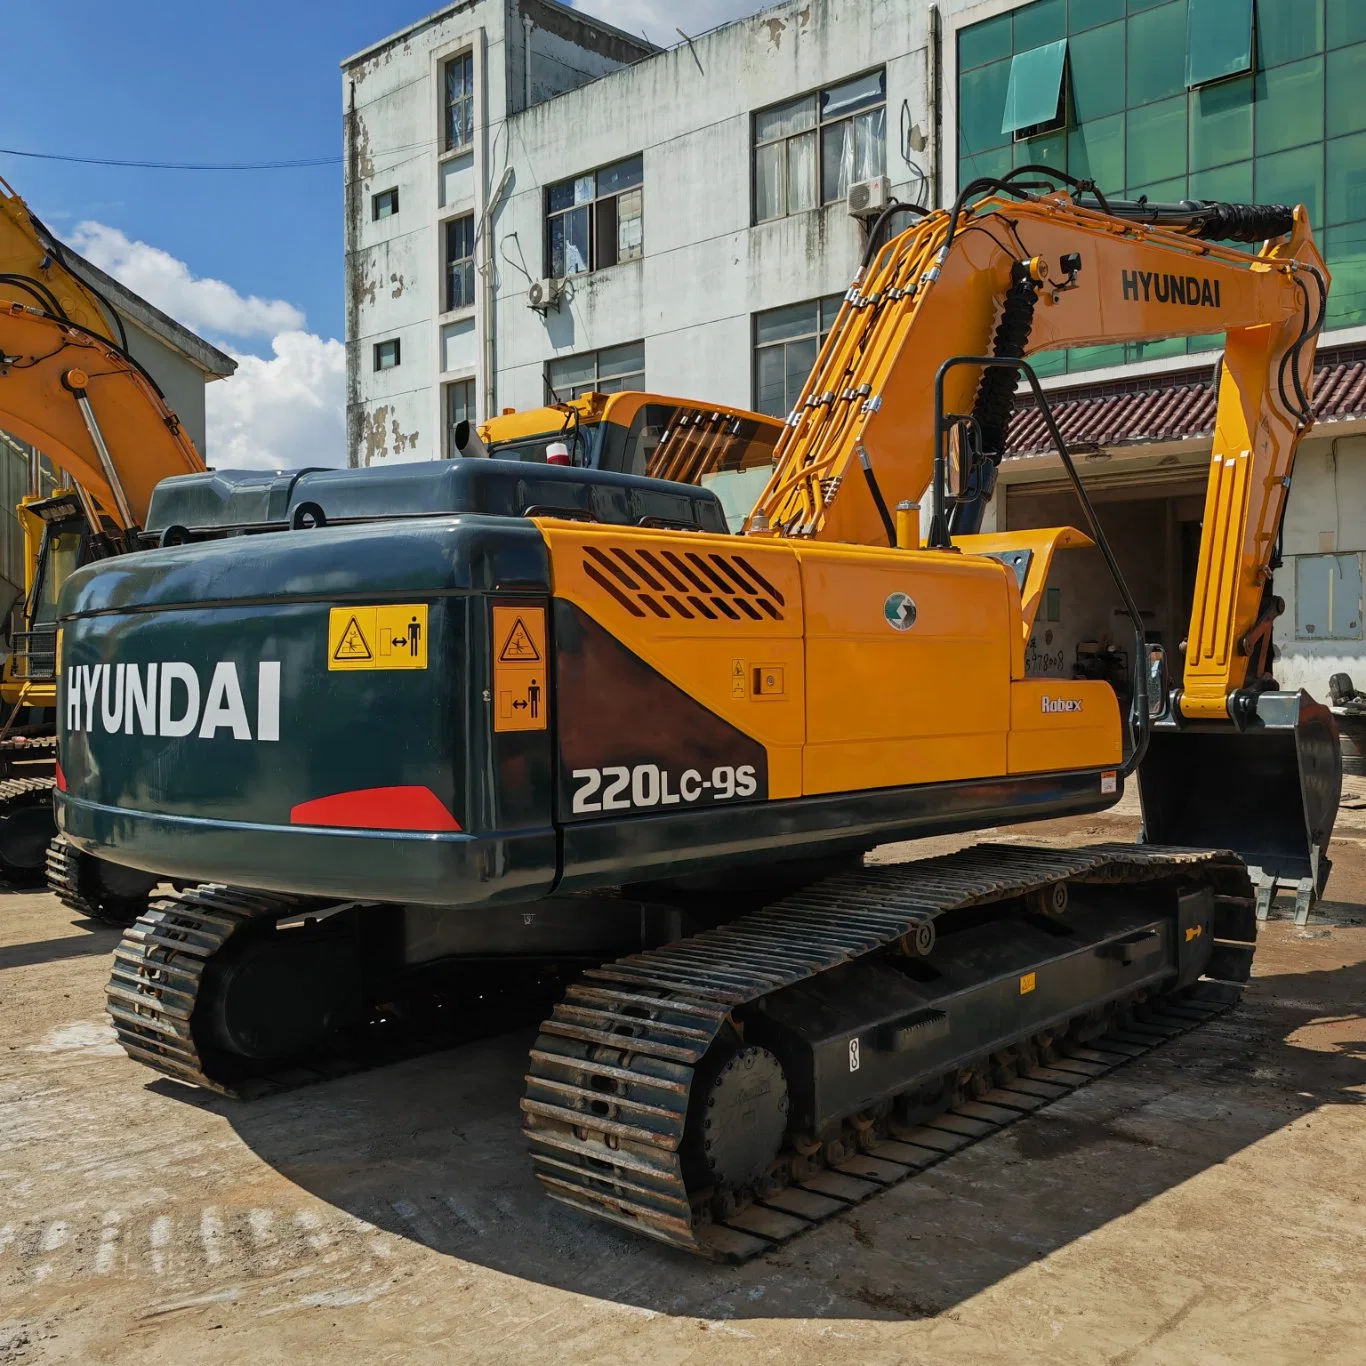 Escavadeira usó Excavadoras hidráulicas de 20 toneladas para equipos de servicio pesado Excavadora de buen estado Hyundai 220 usada Precio 220LC-9s